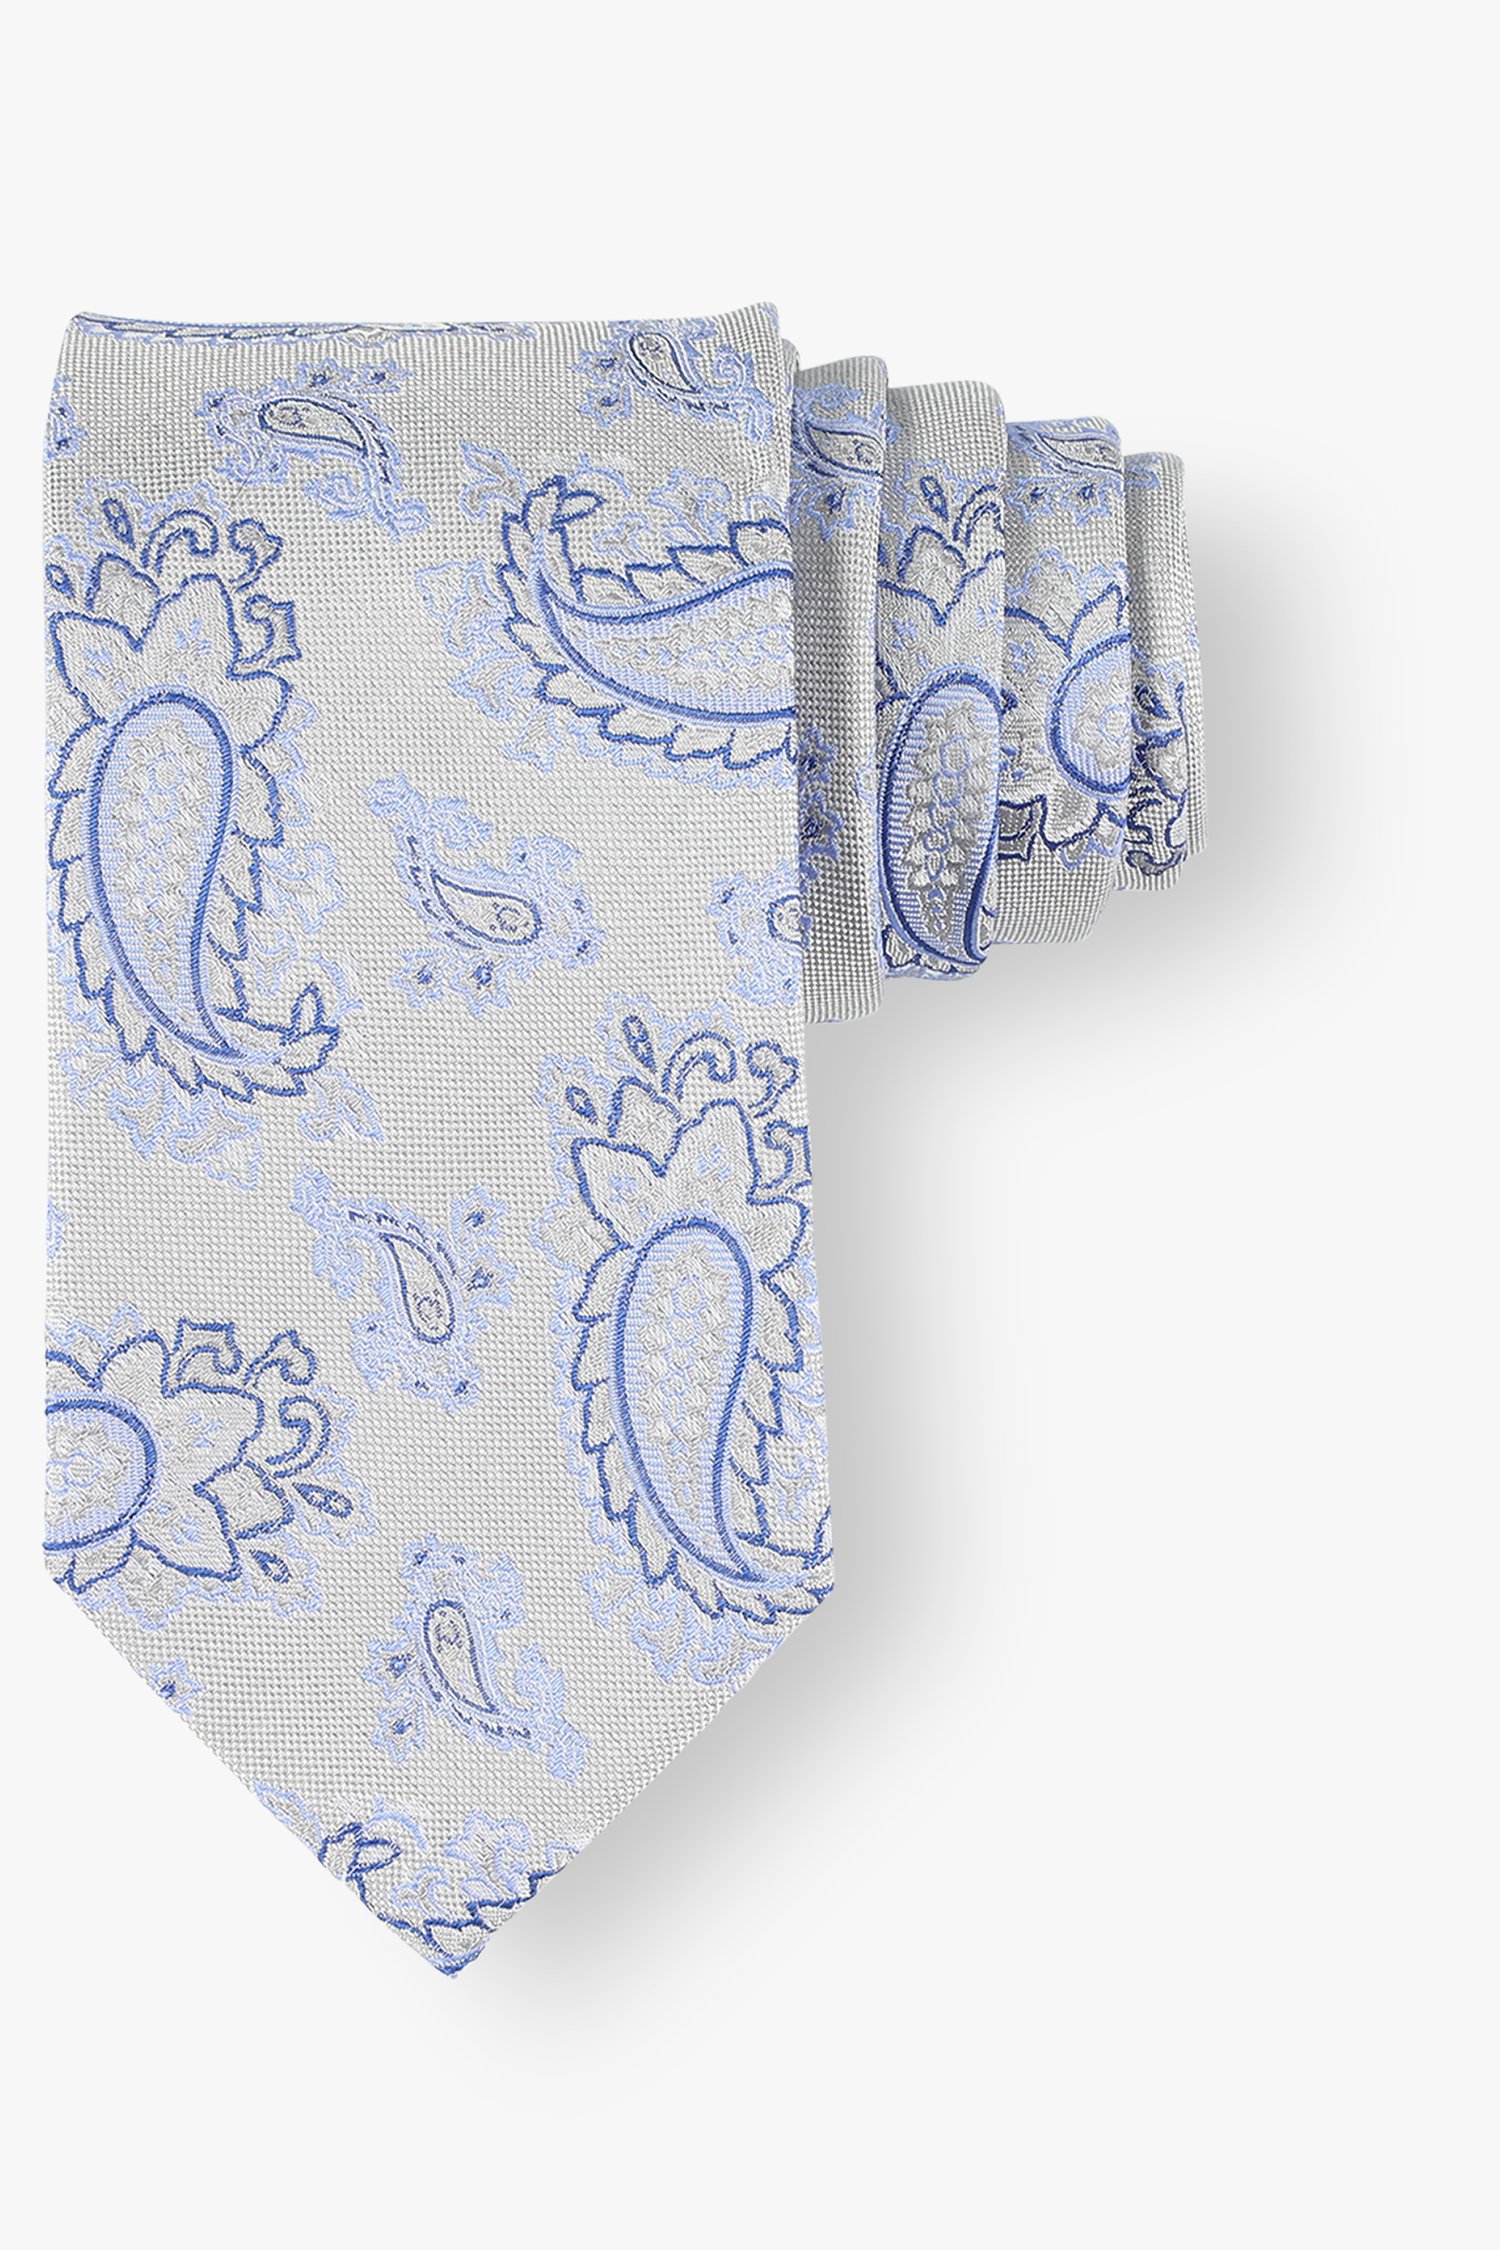 Cravate grise avec imprimé paisley bleu de Michaelis pour Hommes